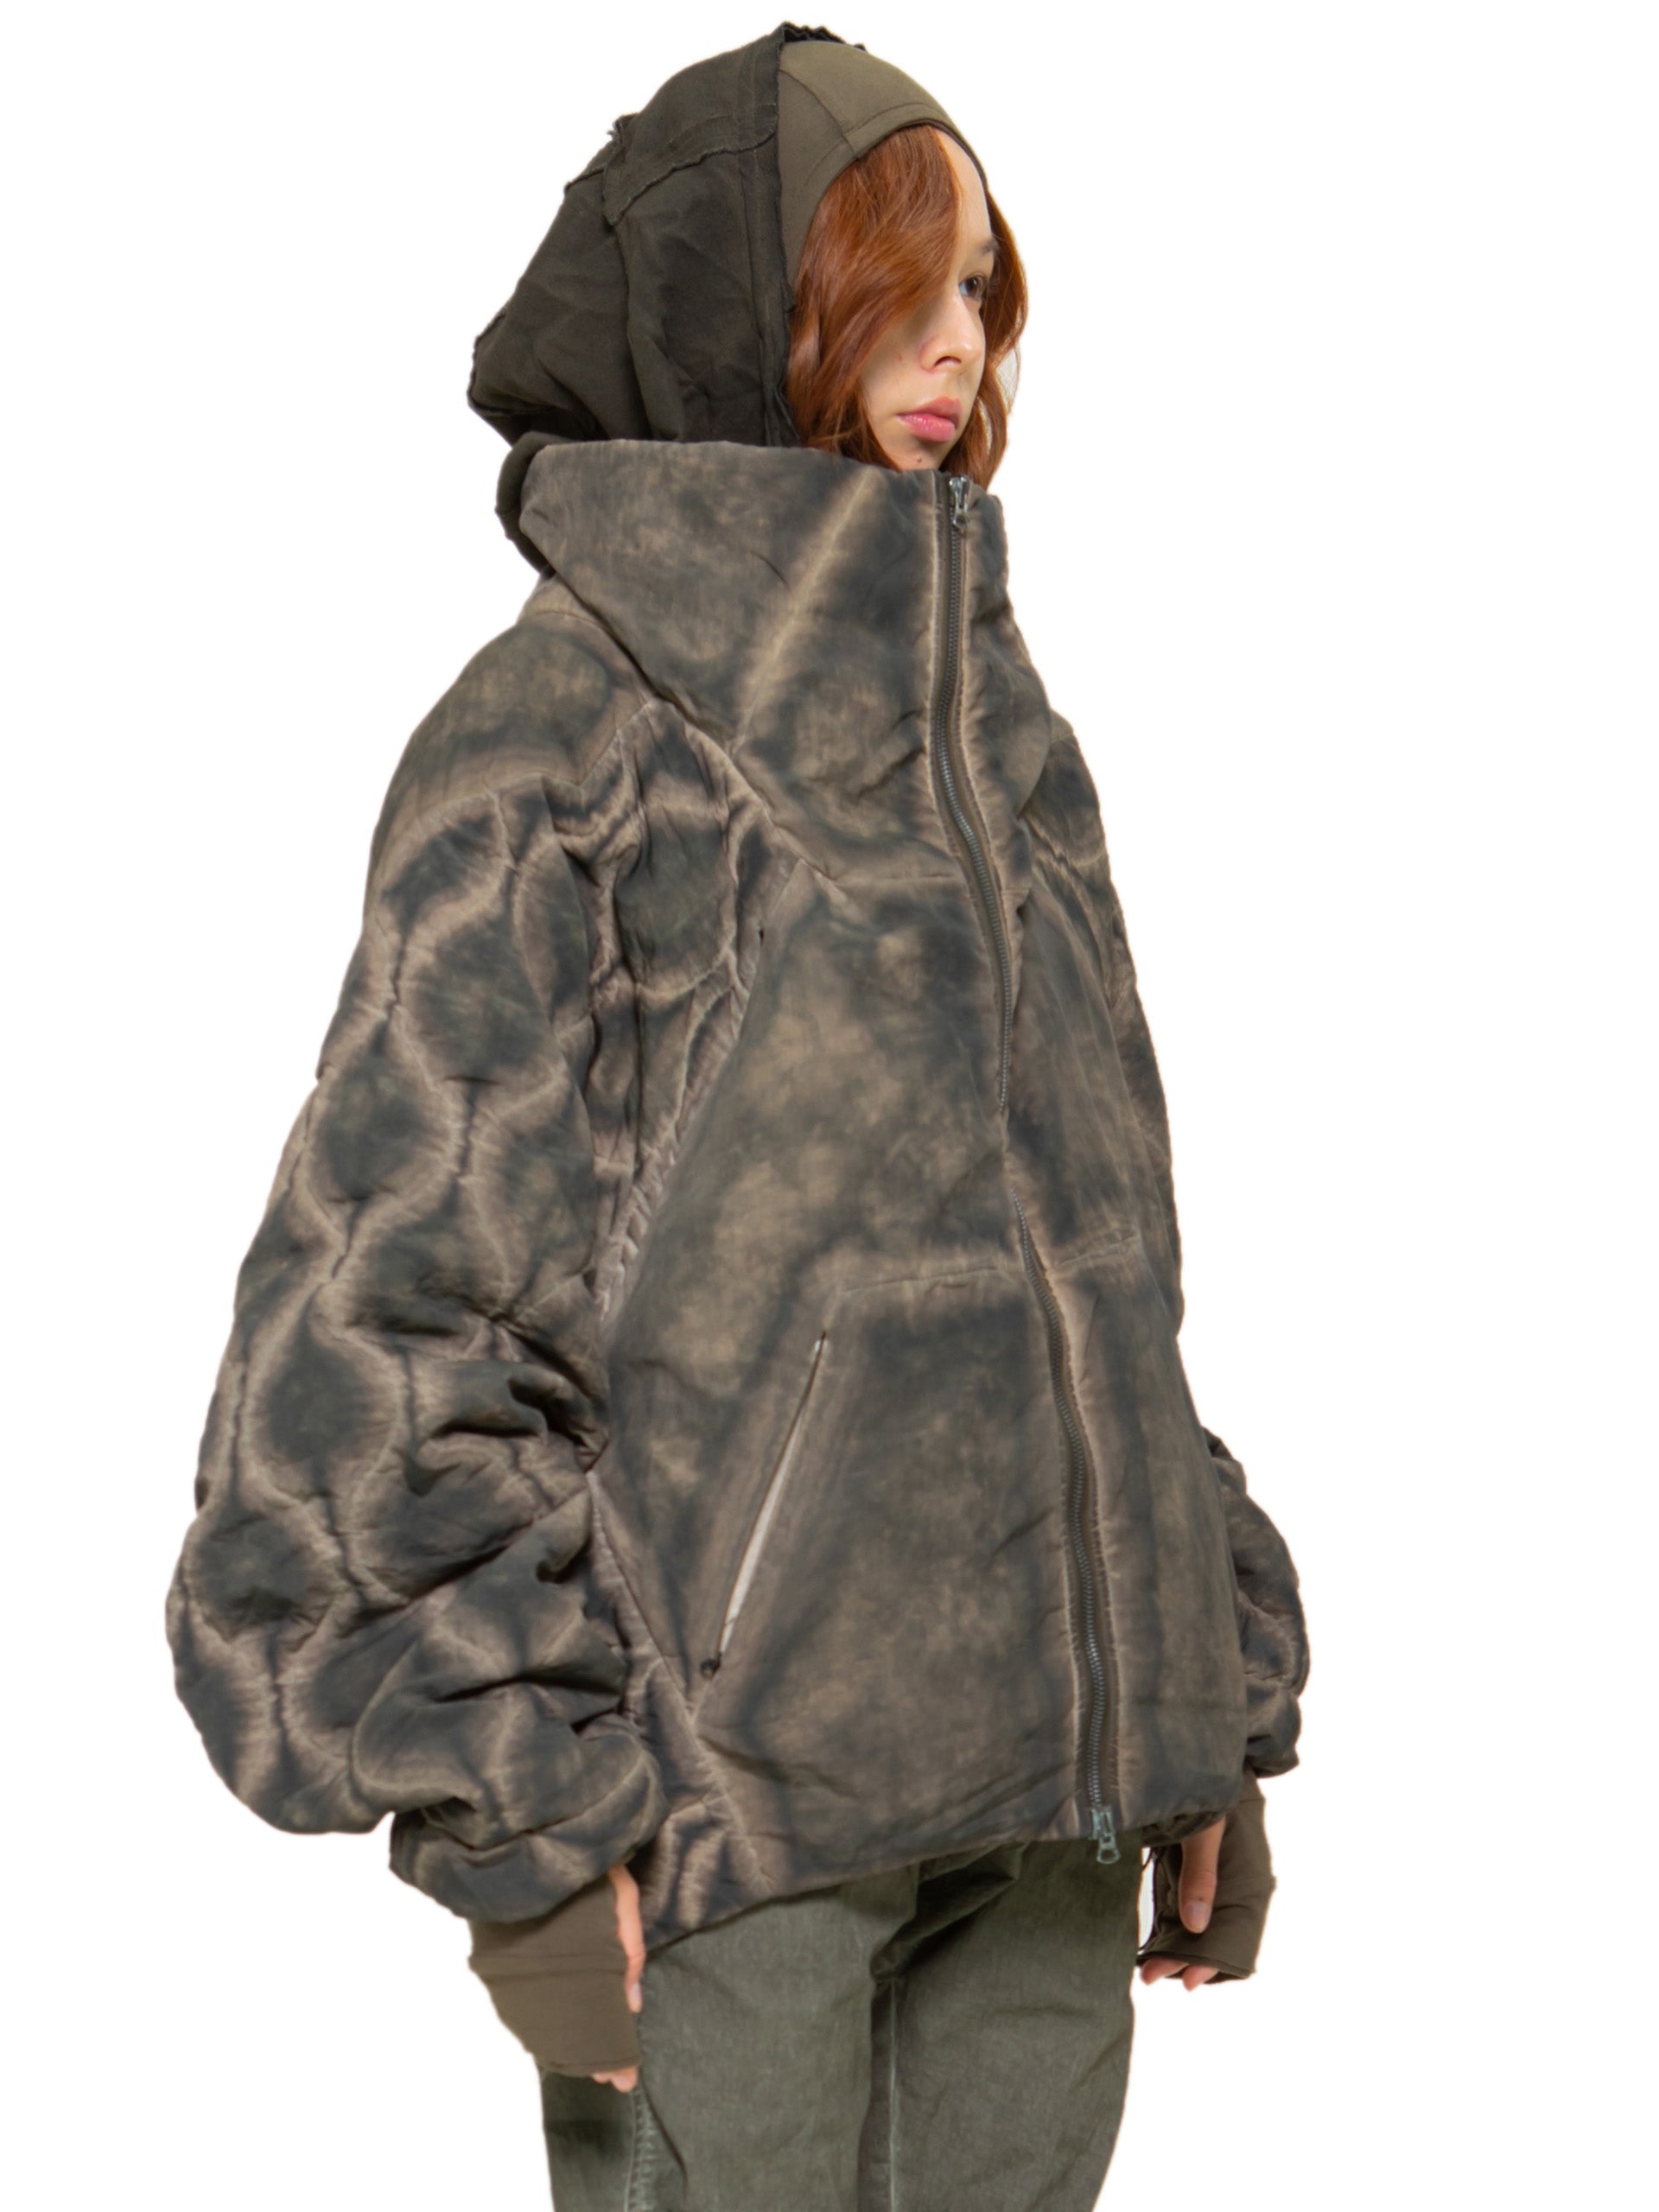 HAMCUS fur military jacket